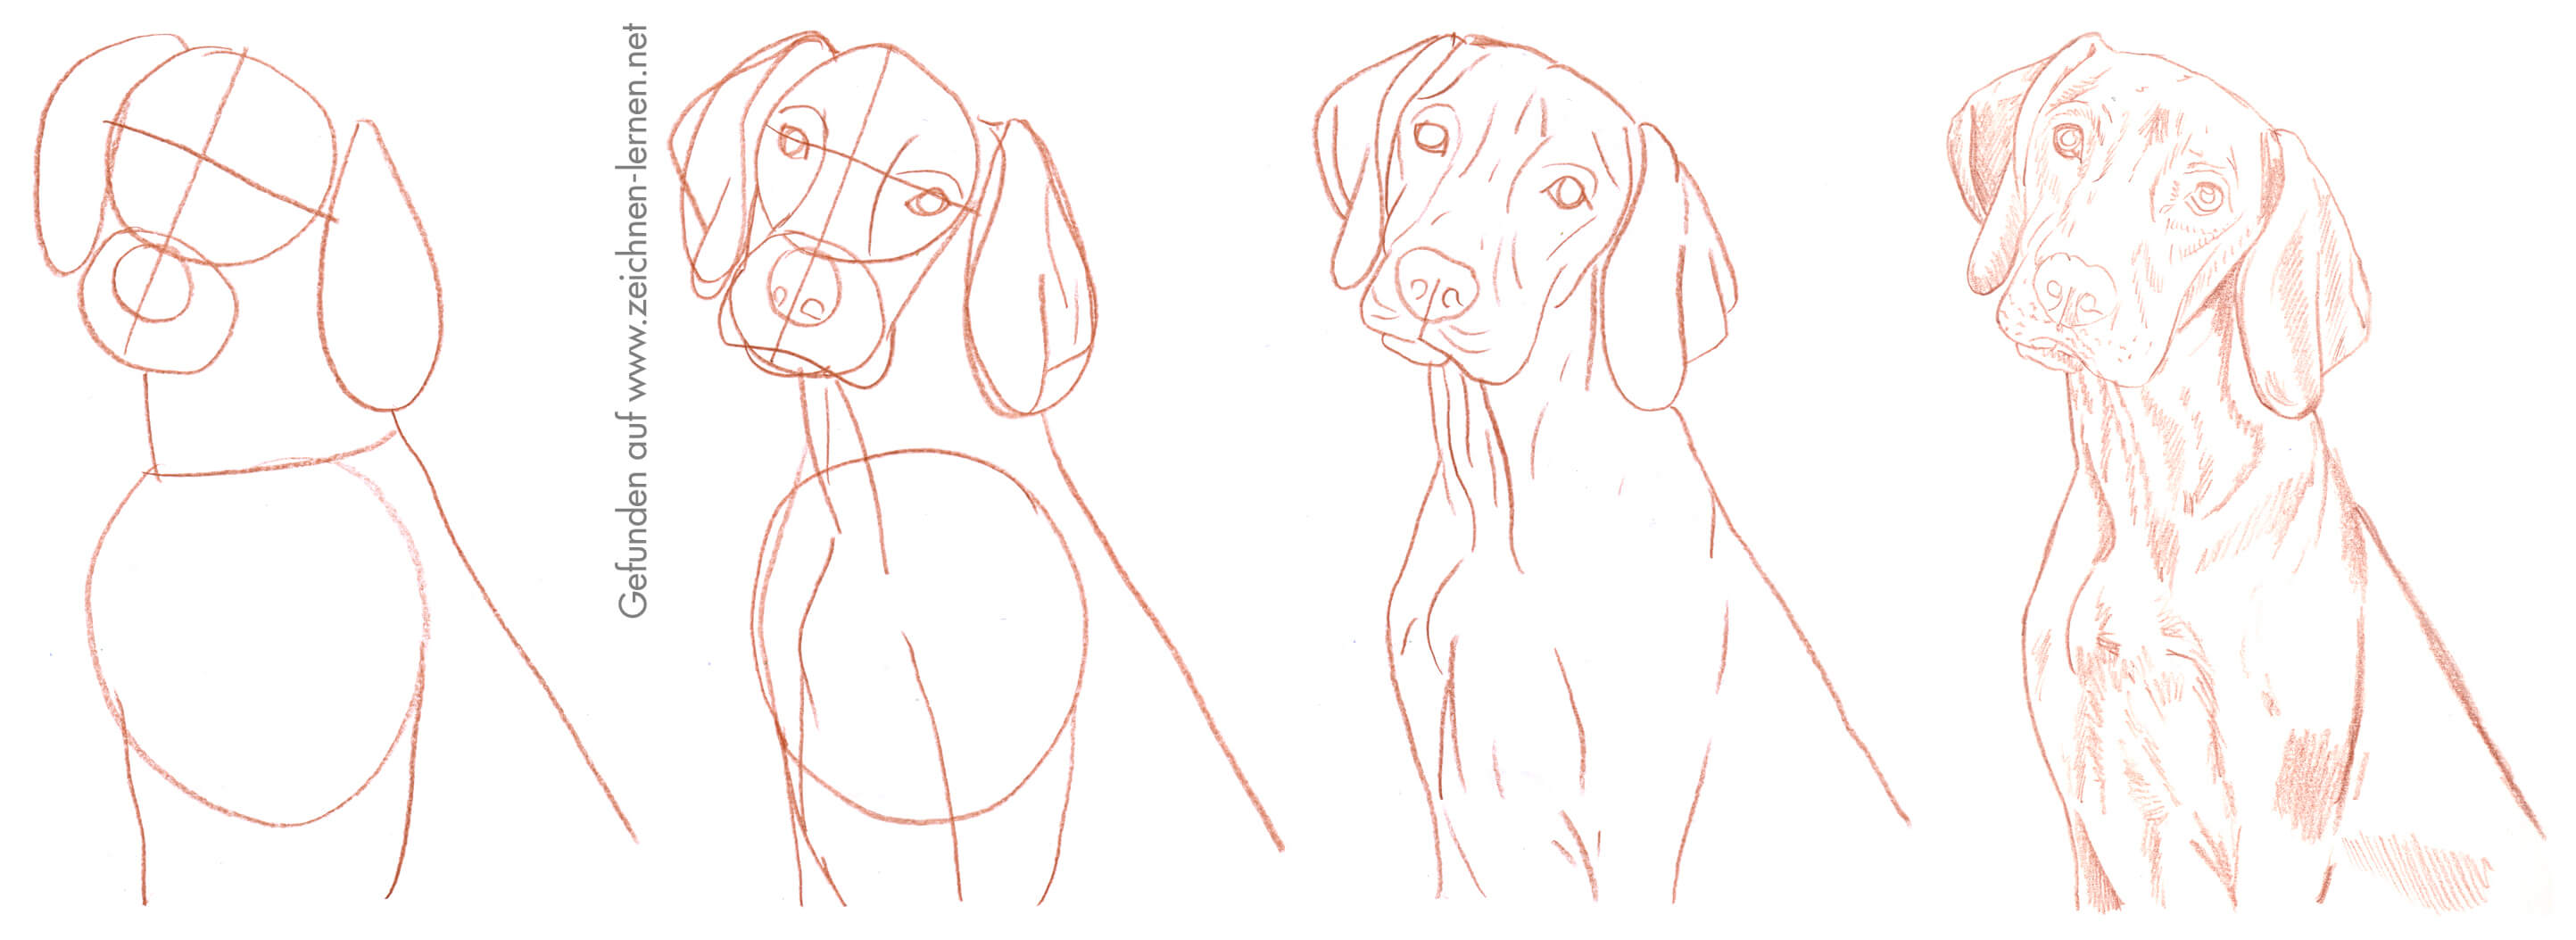 Hund Zeichnen Lernen So Zeichnest Du Unsere Pelzigen Freunde Zeichnen lernen fuer anfaenger wie schueler, wiedereinsteiger und fortgeschrittene. zeichnen lernen